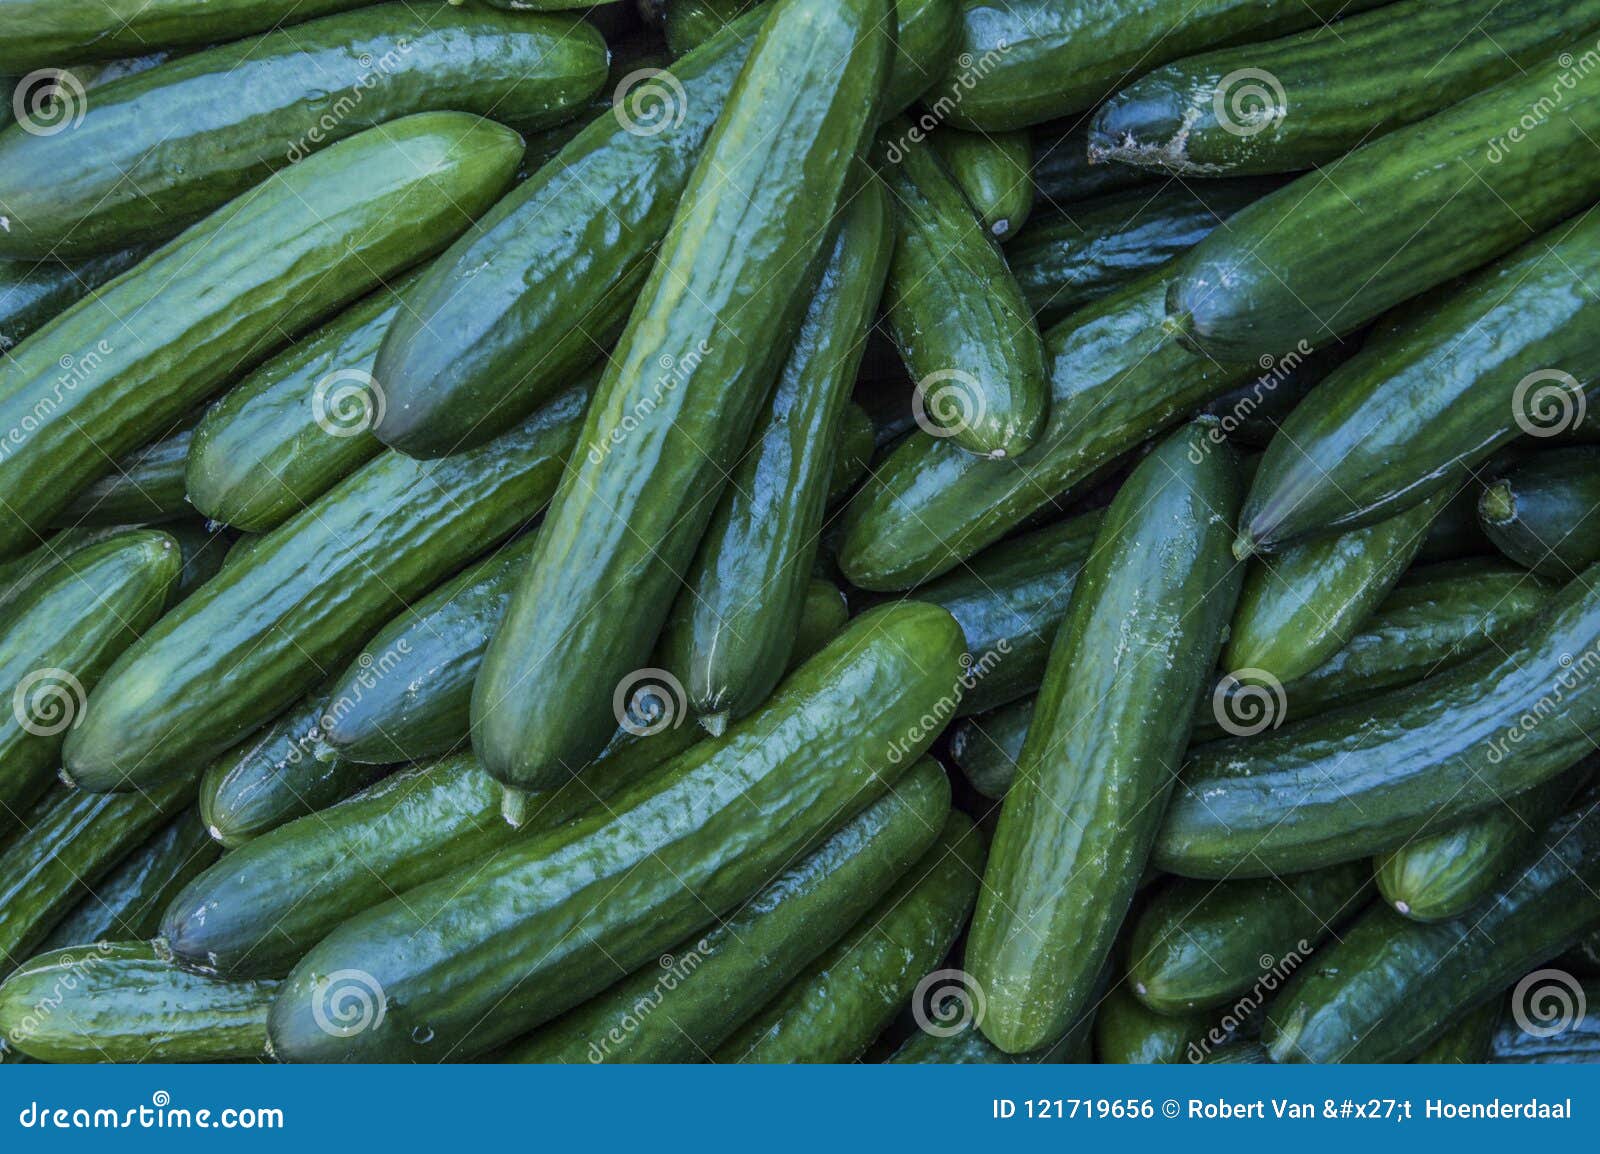 close up of cucumbers